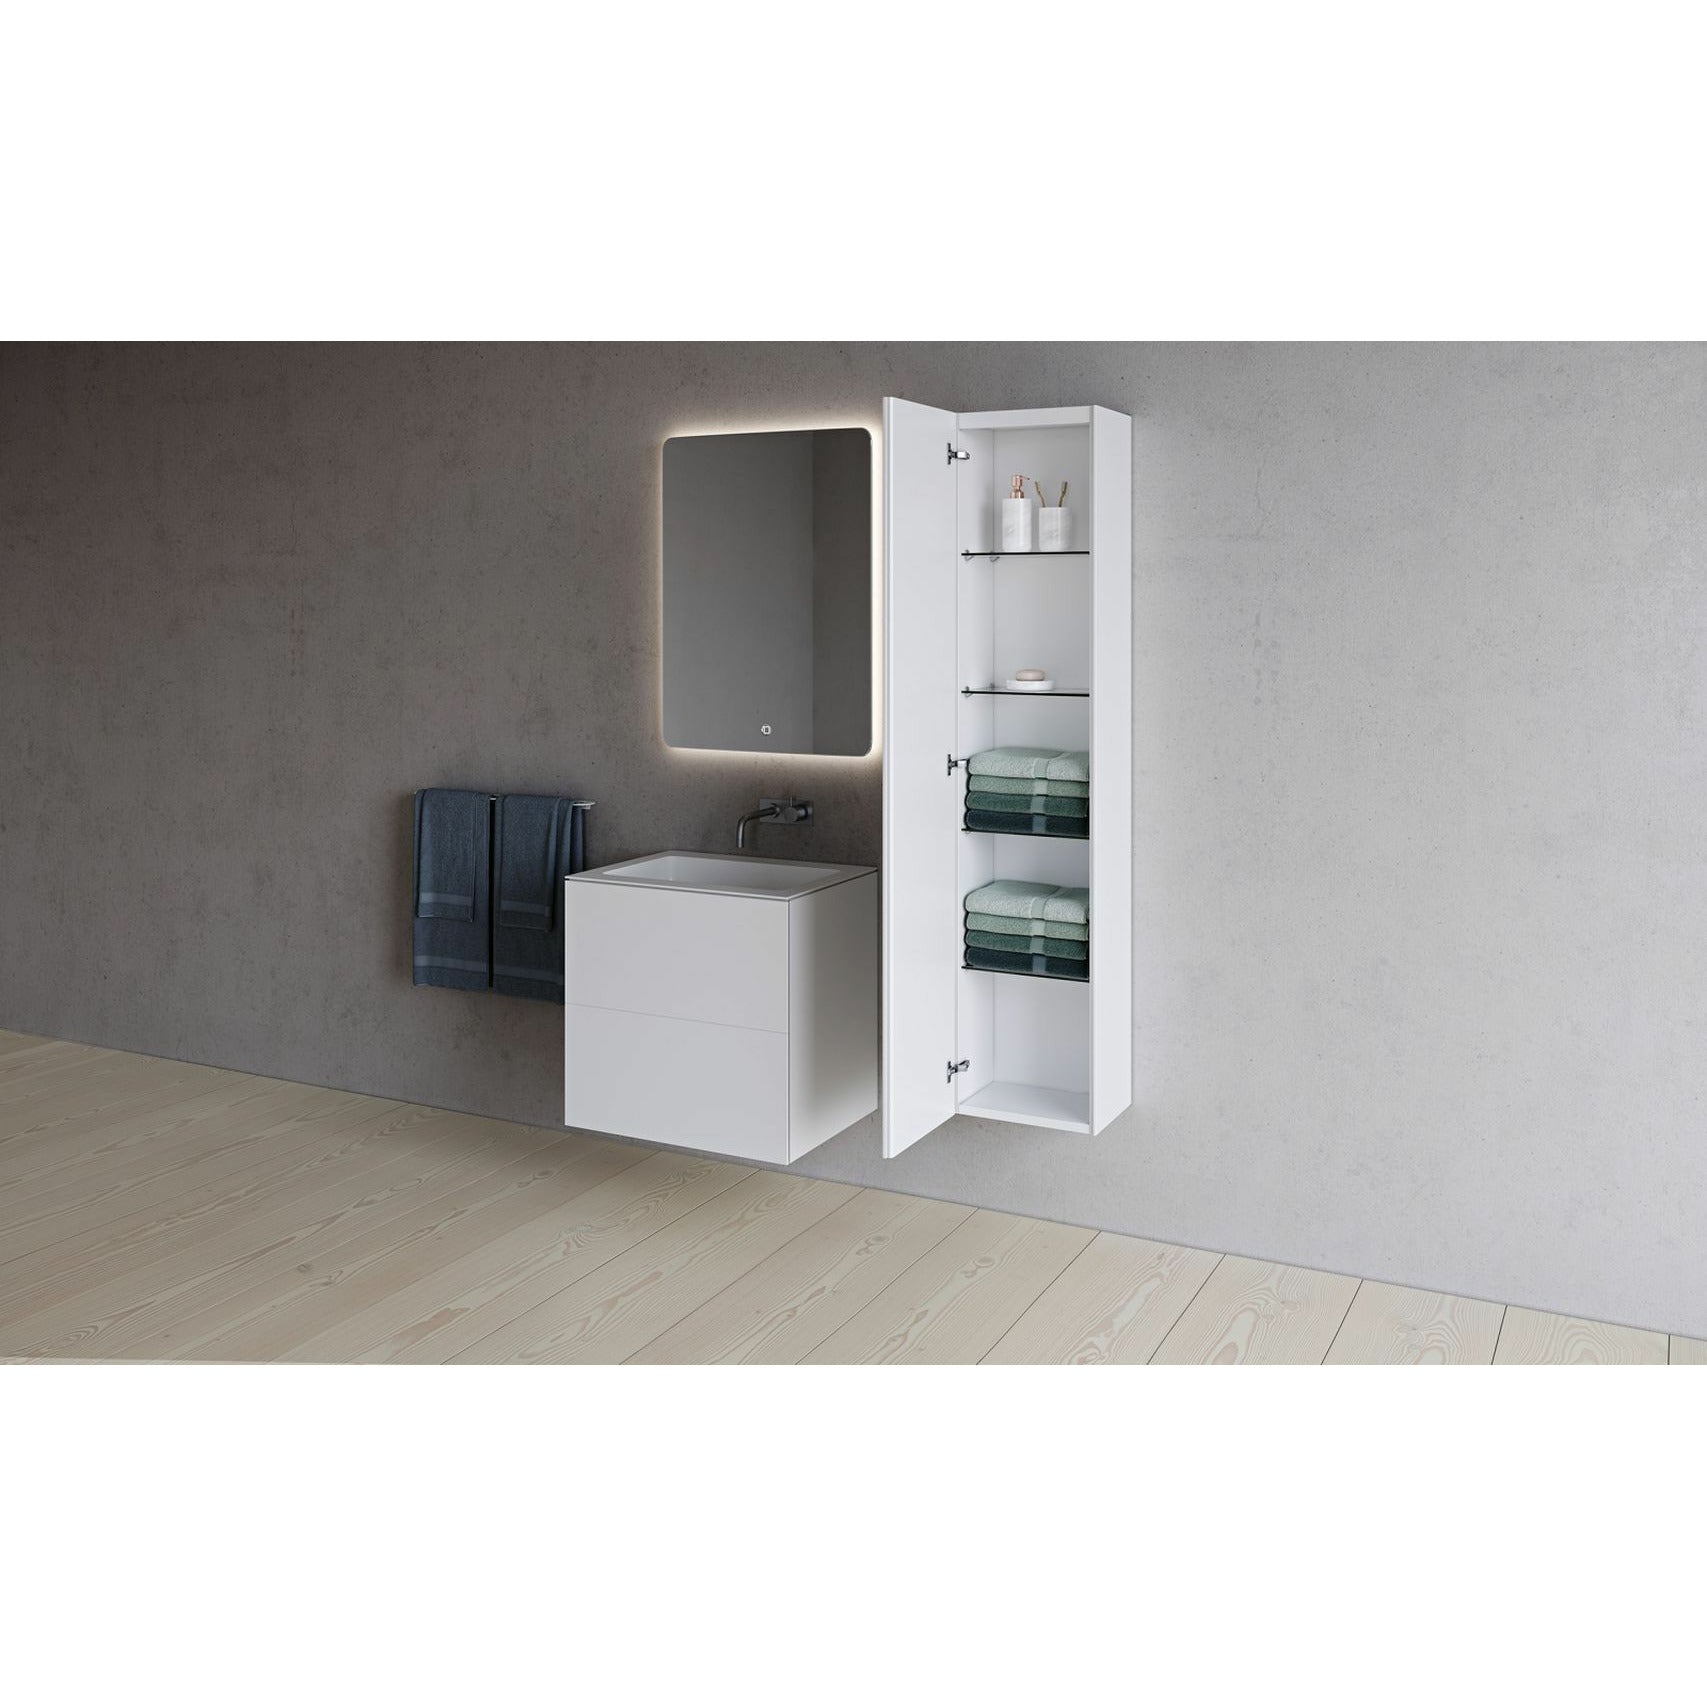 Copenhague Bath SQ2 Doble gabinete con lavado central, L60 cm